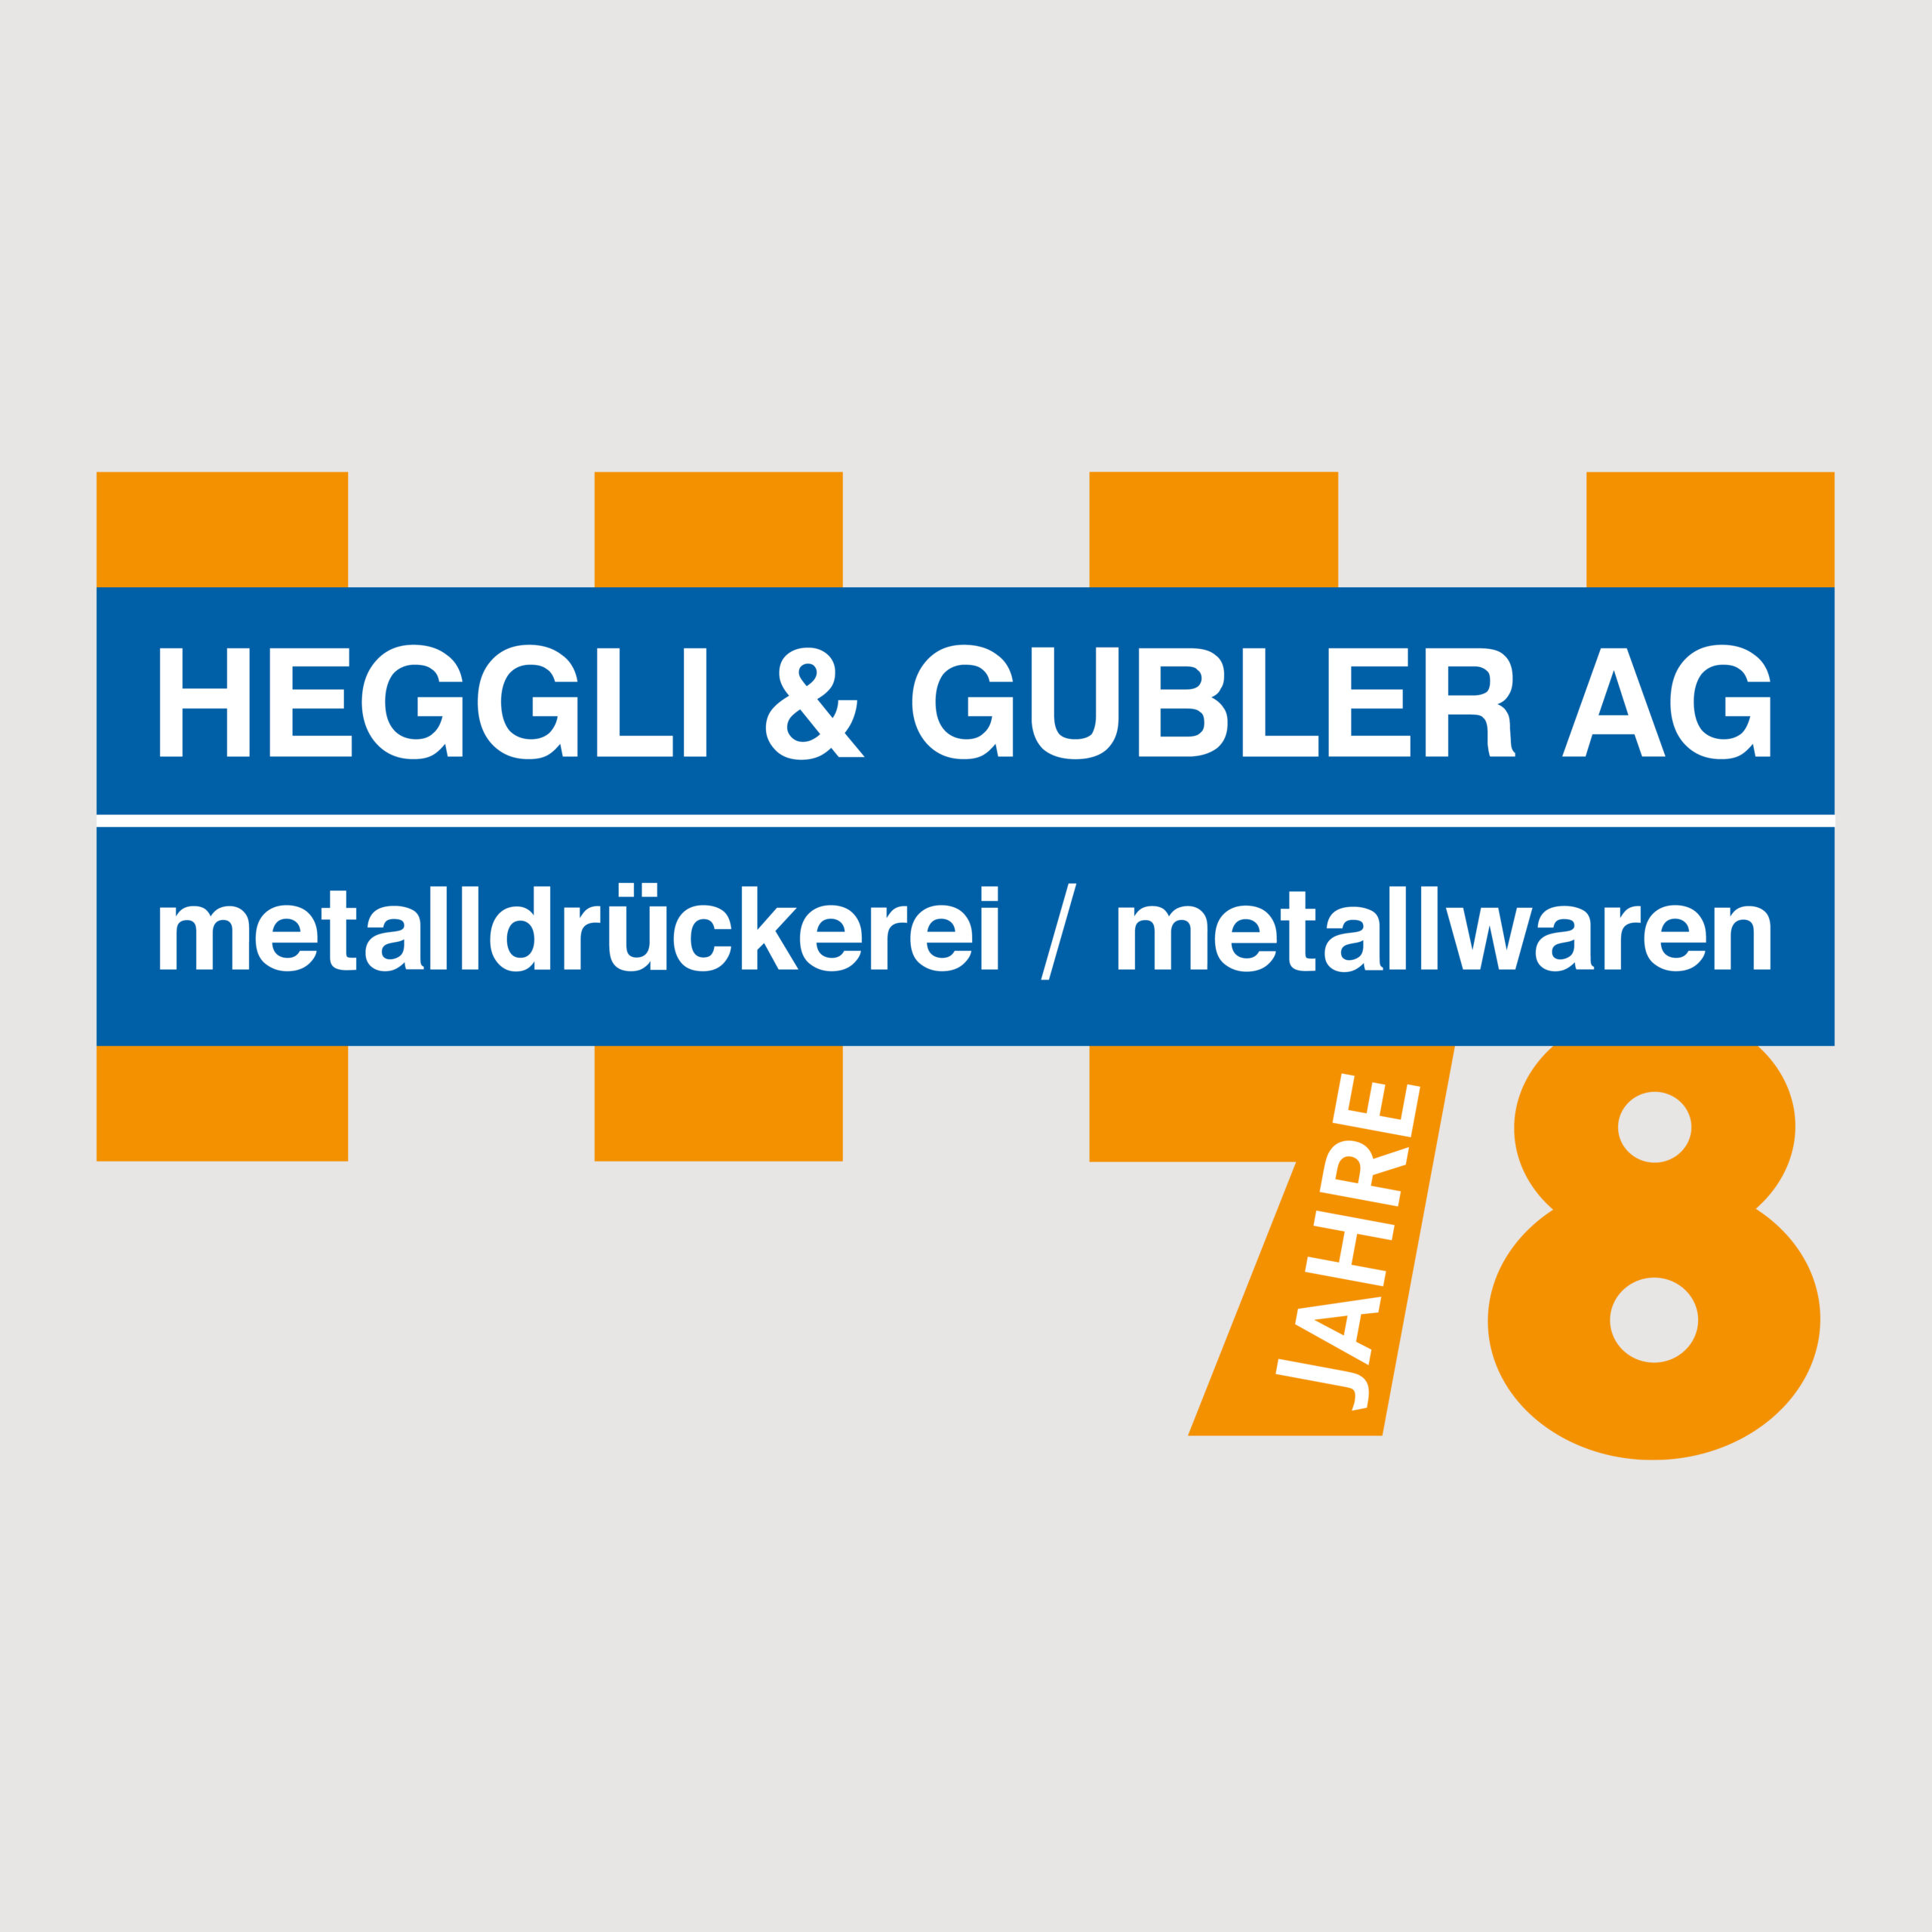 WEB1_GMW_Projekt_Heggli-Gubler-Jubilaeumslogo_05-2023_1200x1200px_RGB